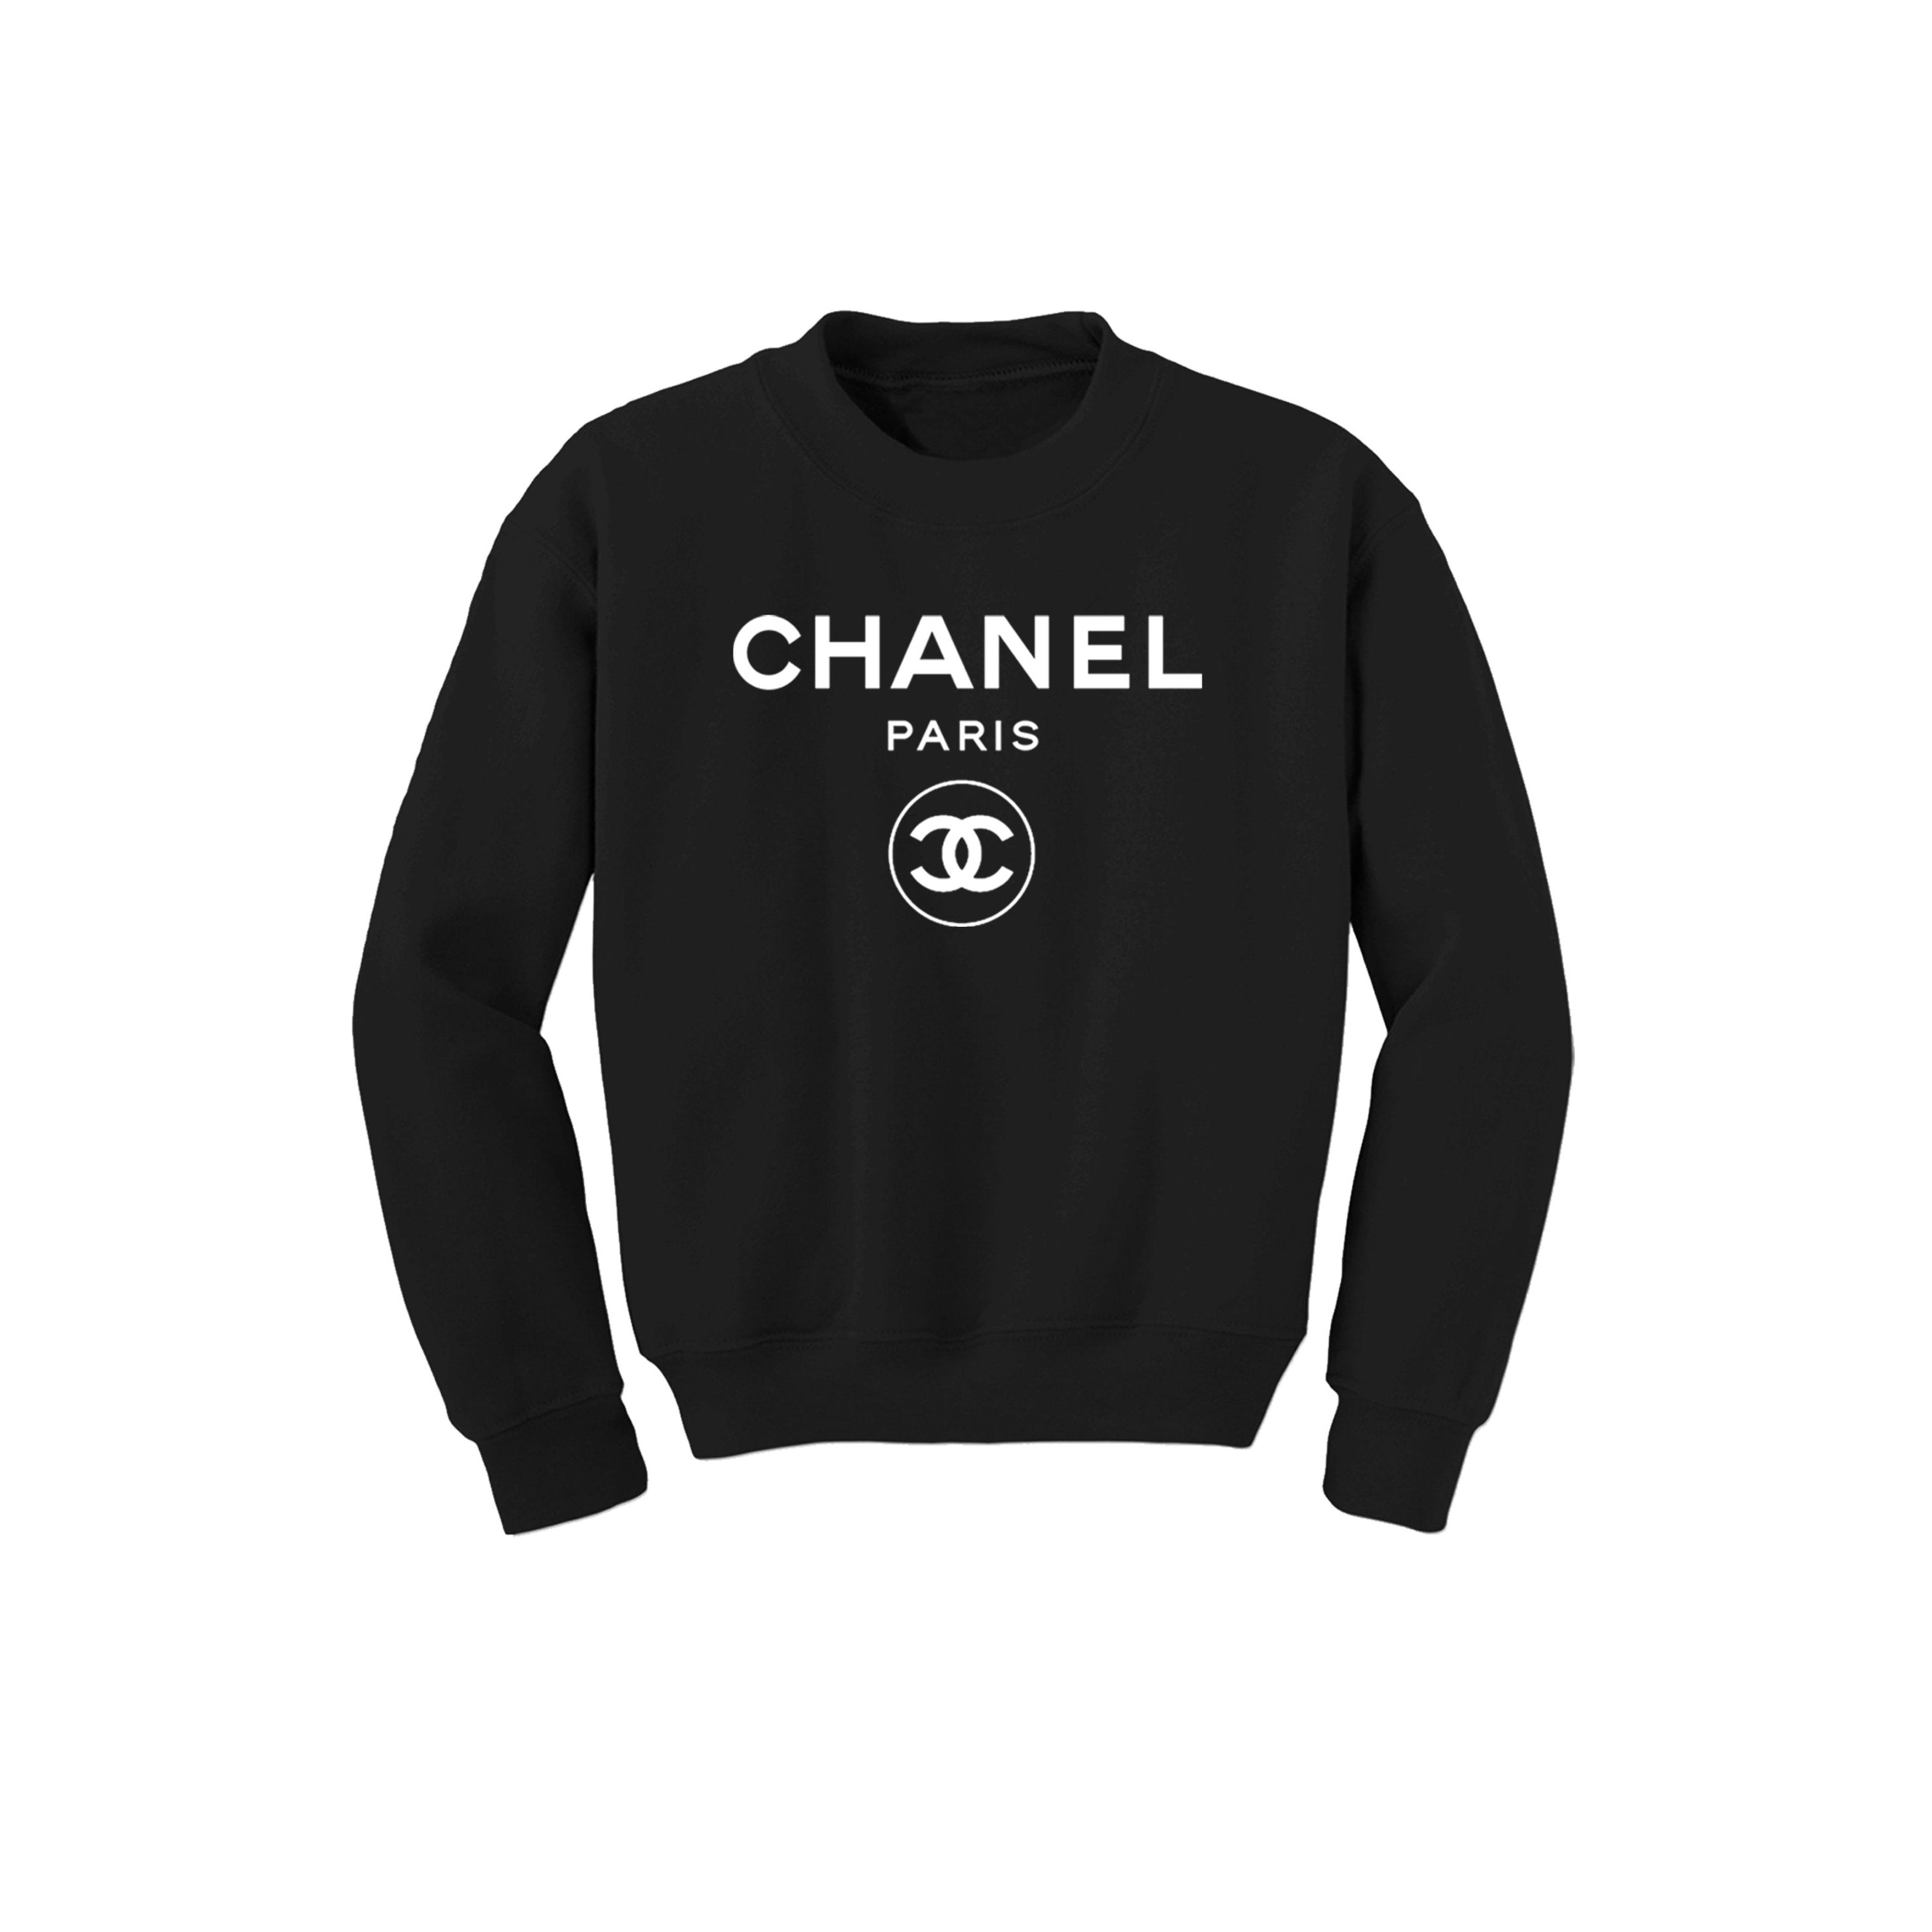 Chanel Pullover.Westen.Sweatshirts aus Polyester - Schwarz - Größe